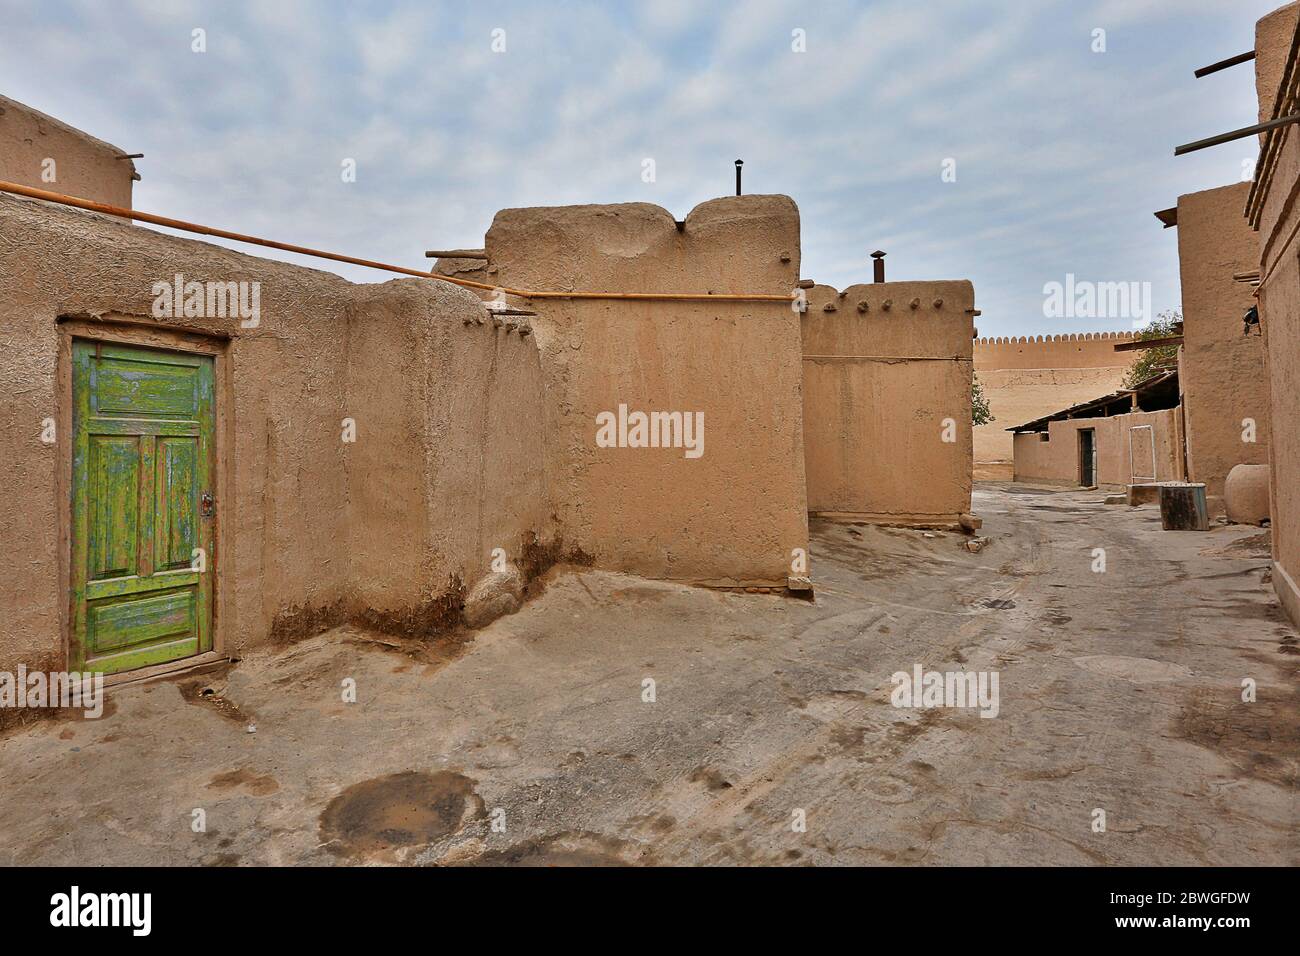 Vieille rue et maisons en briques de boue dans la ville antique de Khiva, Ouzbékistan Banque D'Images